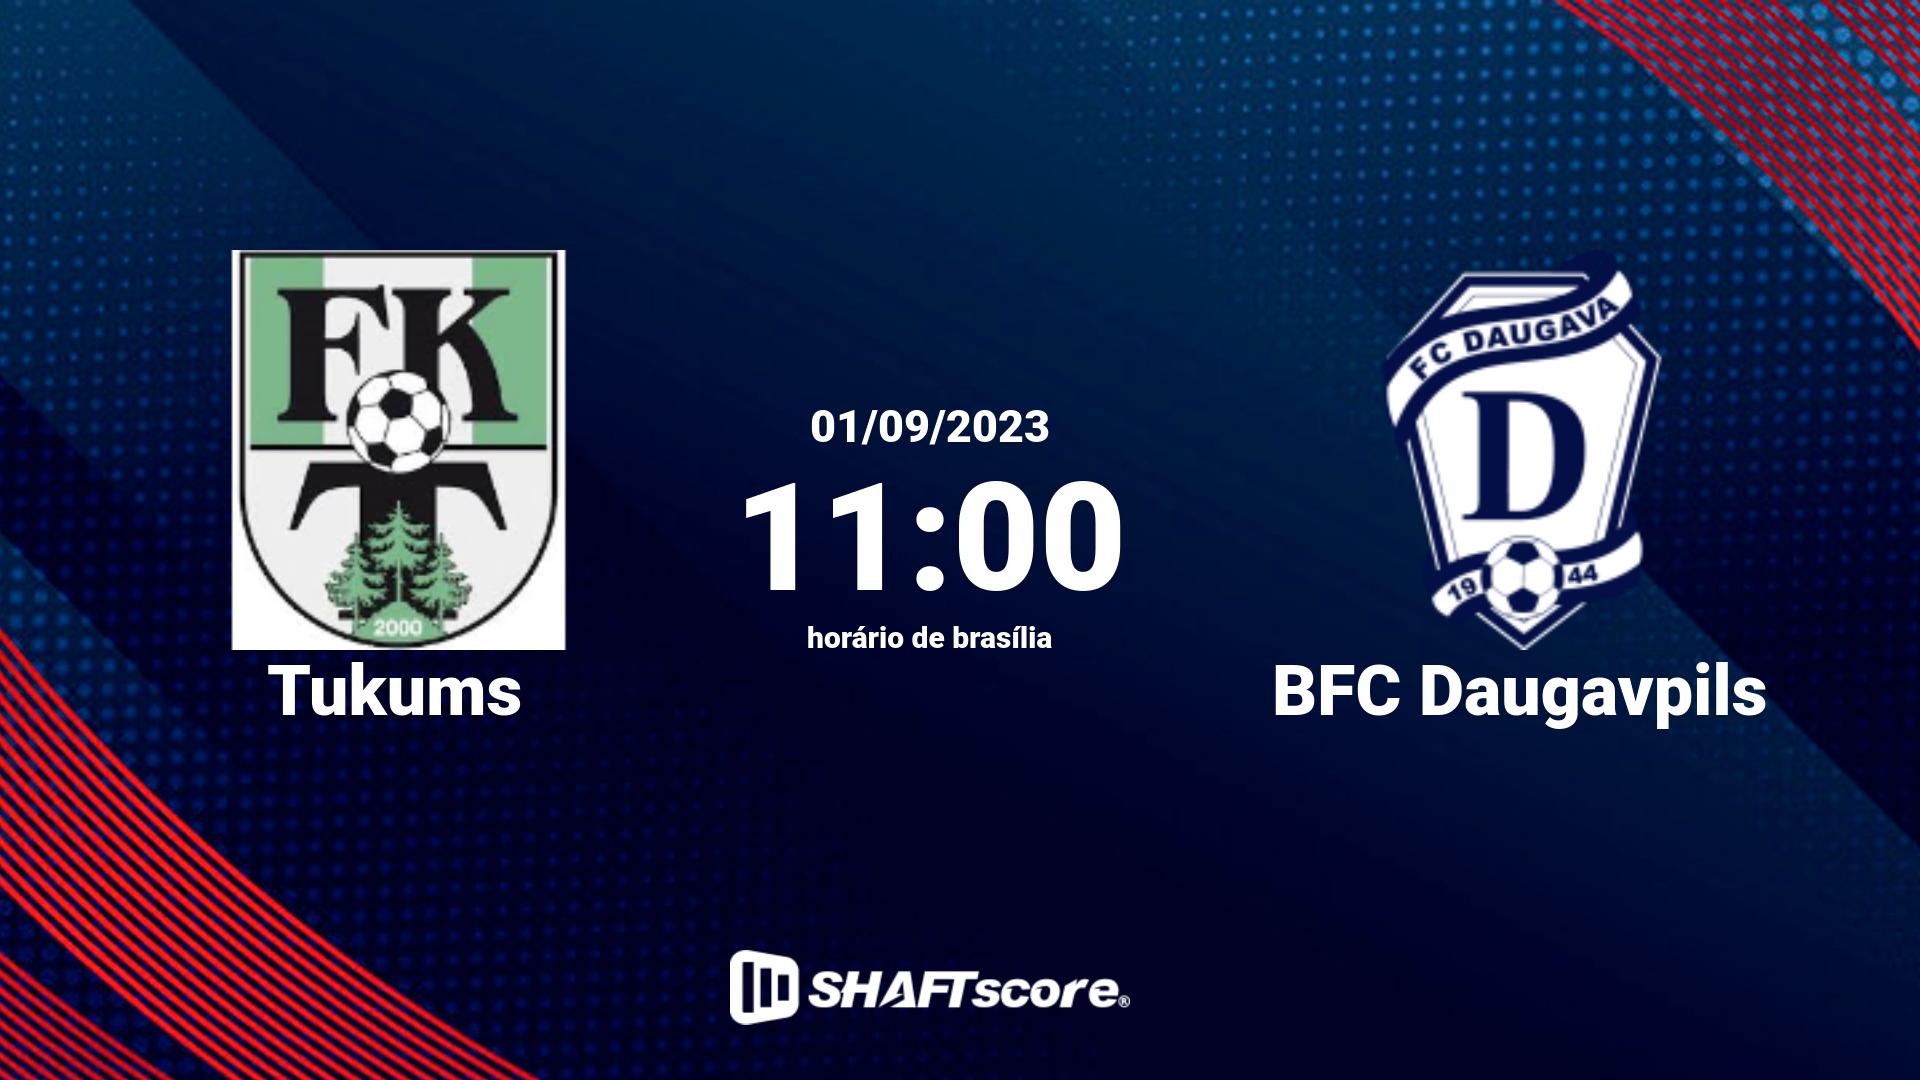 Estatísticas do jogo Tukums vs BFC Daugavpils 01.09 11:00